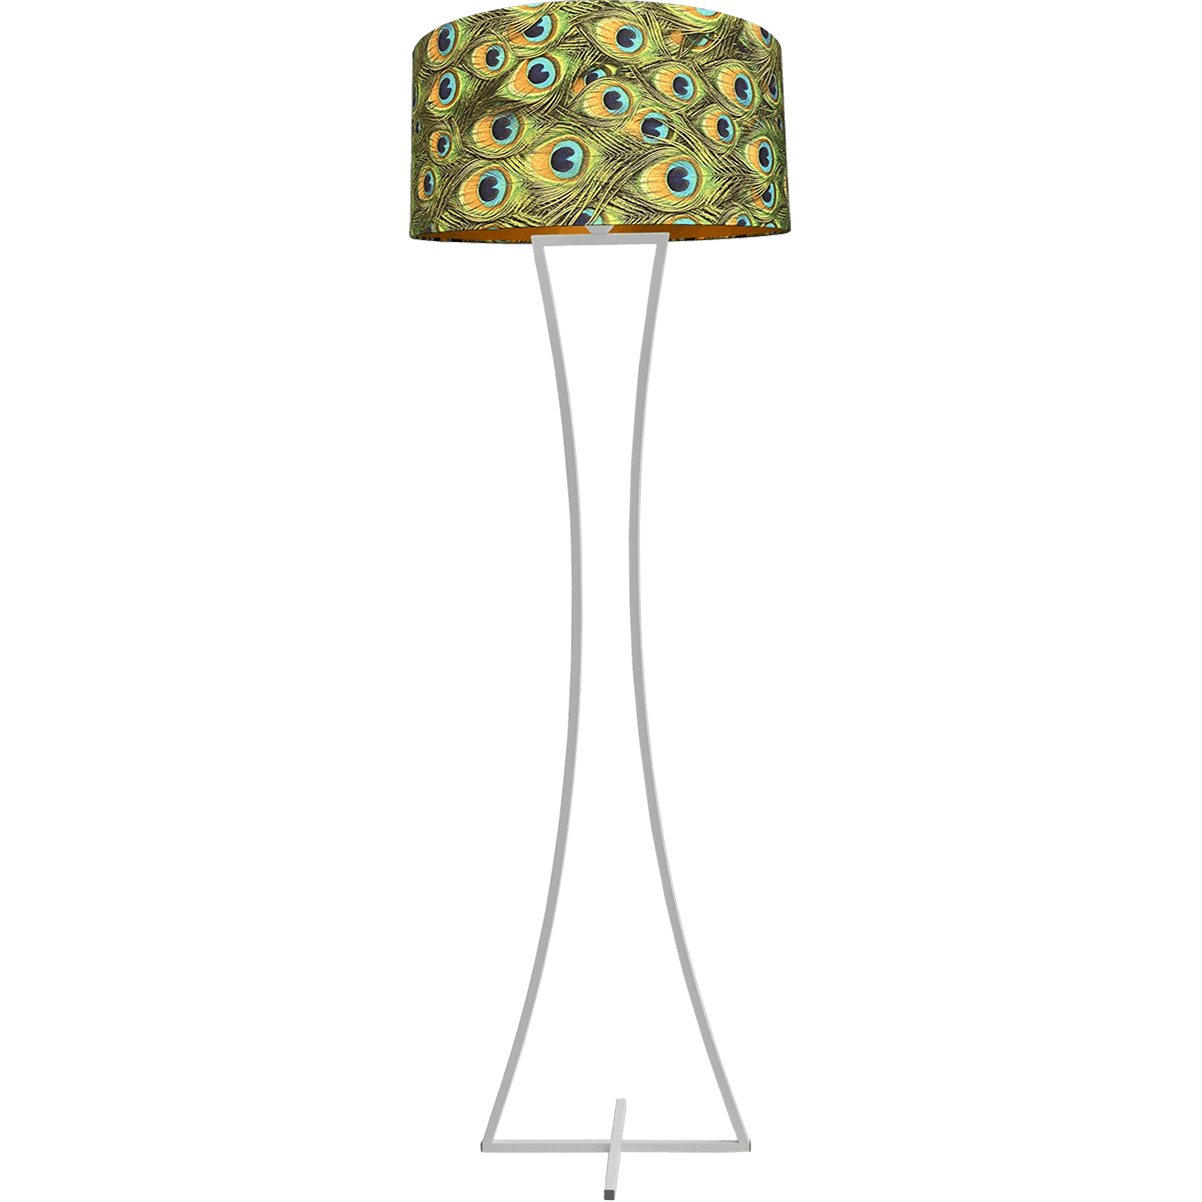 Vloerlamp Cross Woman wit structuur hoogte 158cm inclusief lampenkap met peacockenveren print Artik peacock 52/52/25 - MASTERLIGHT